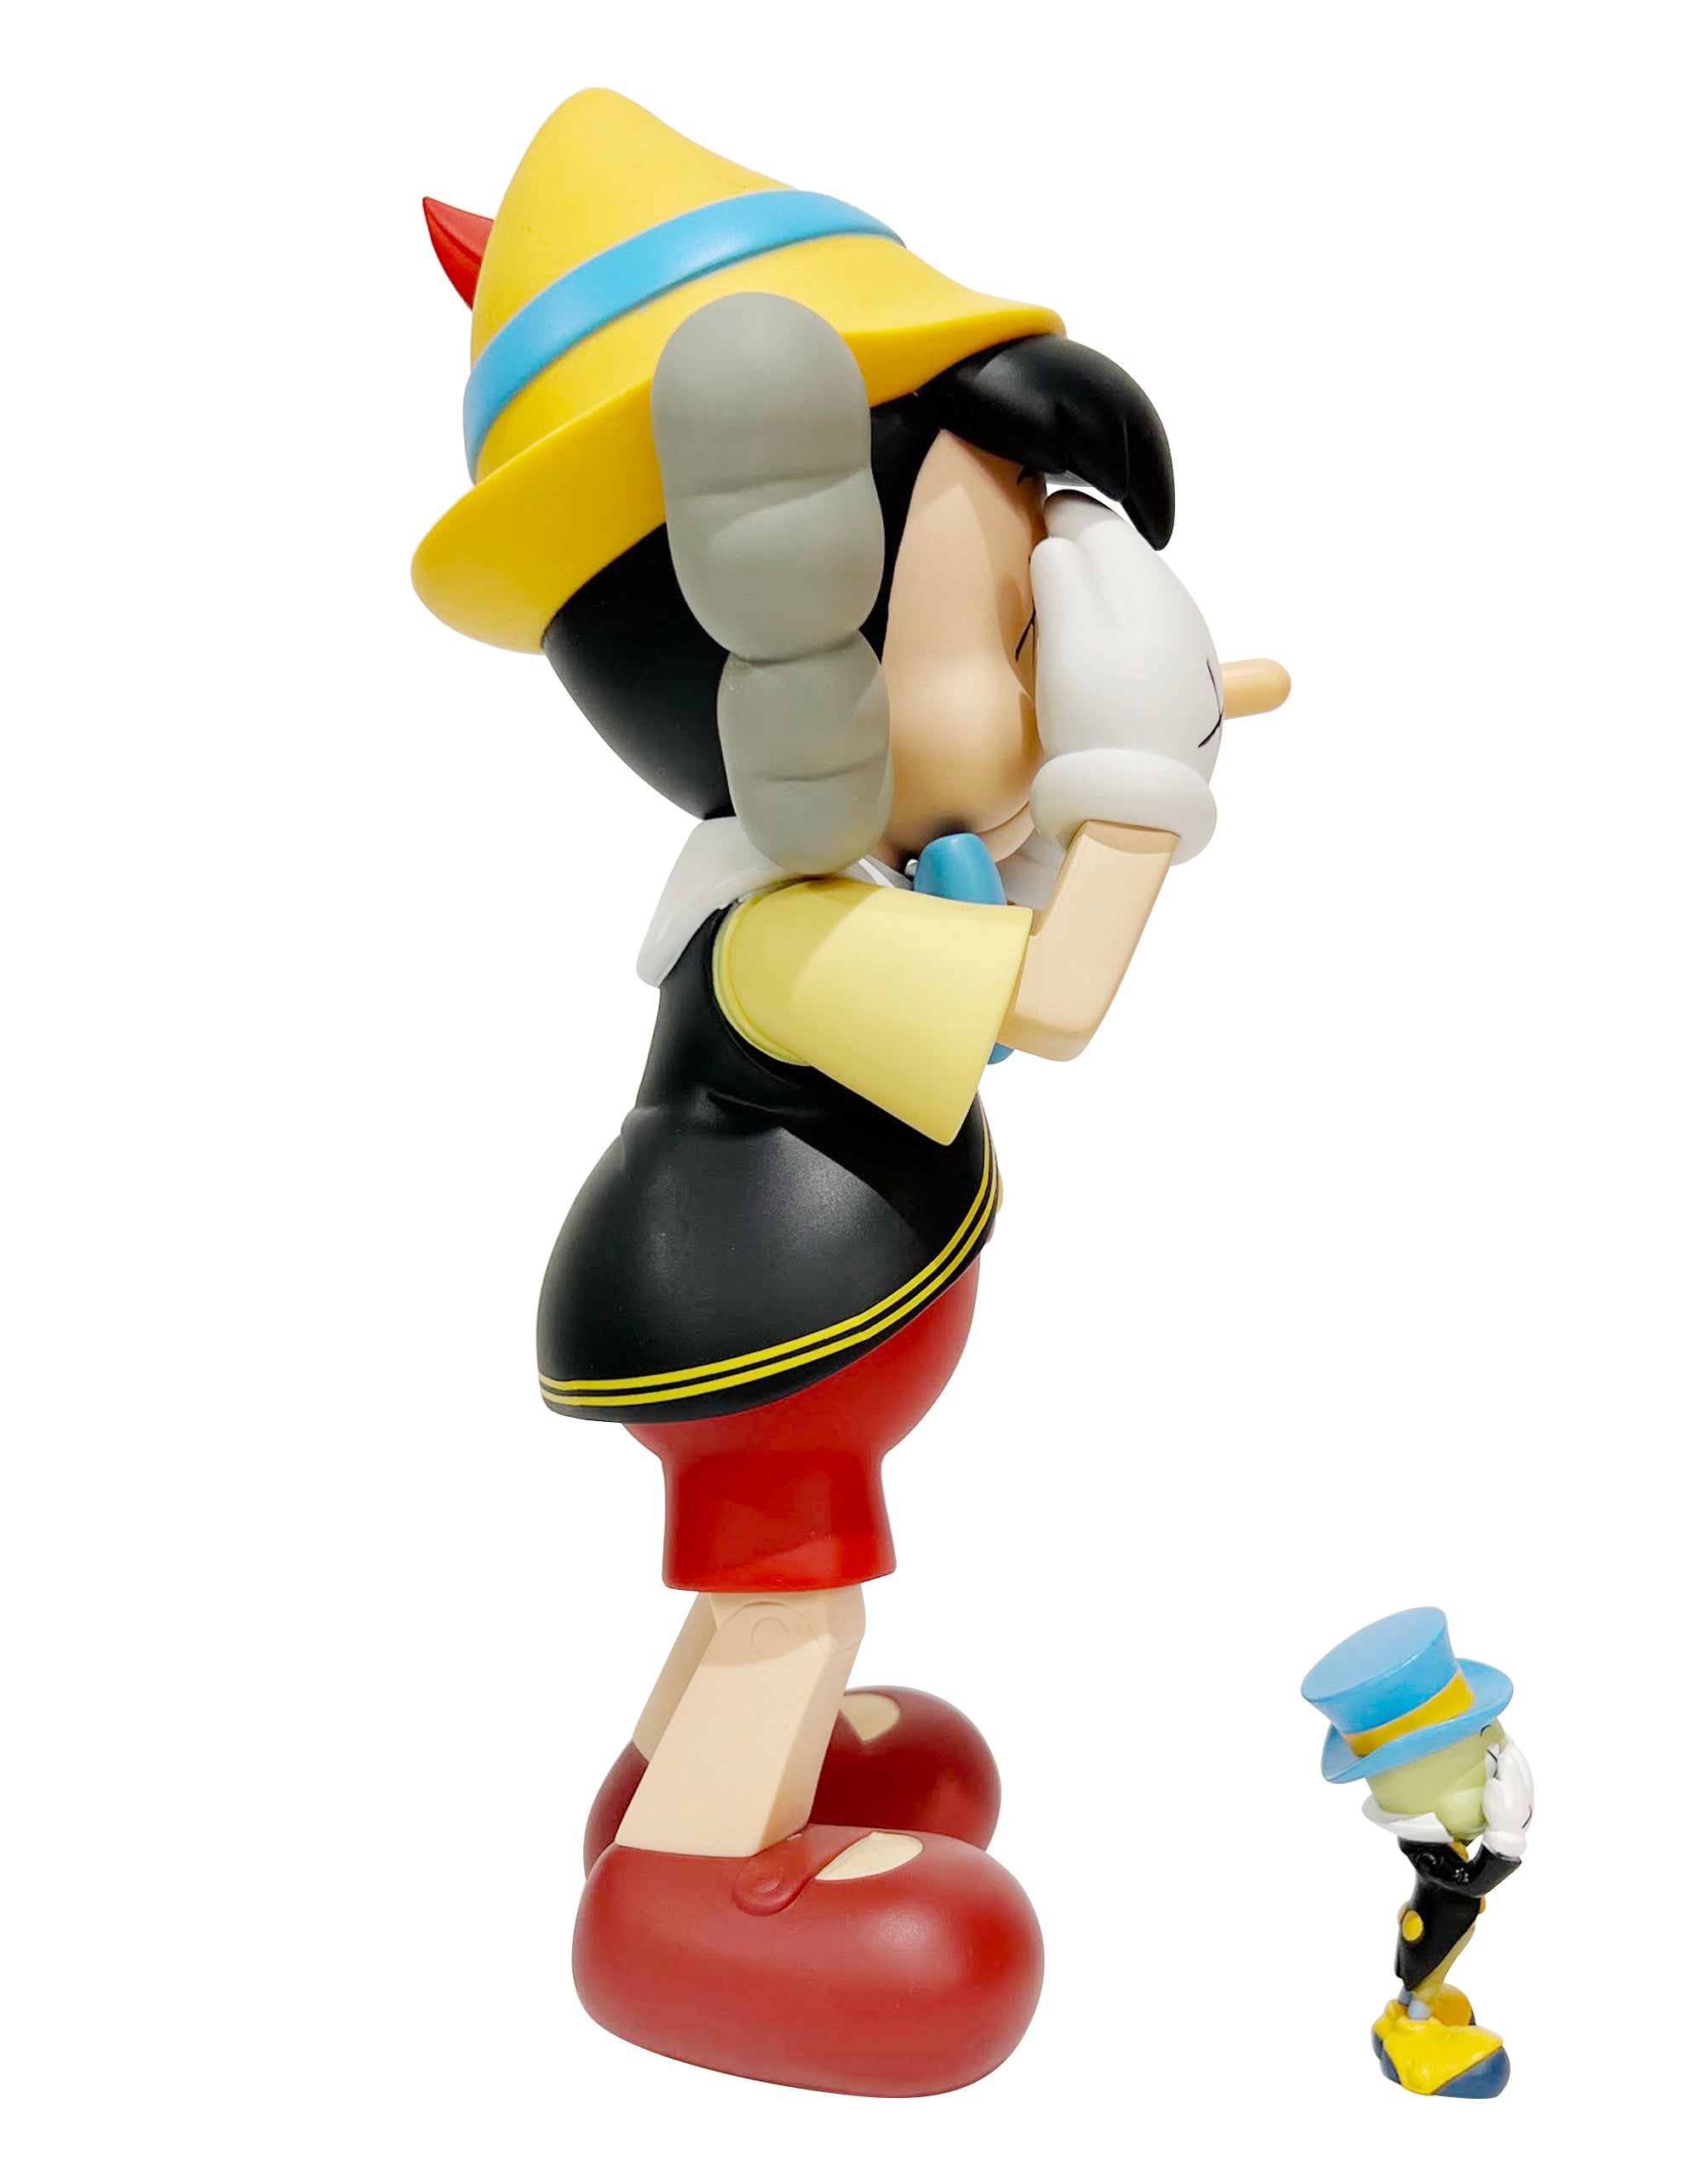 KAWS - Pinocchio & Jiminy Cricket, 2010